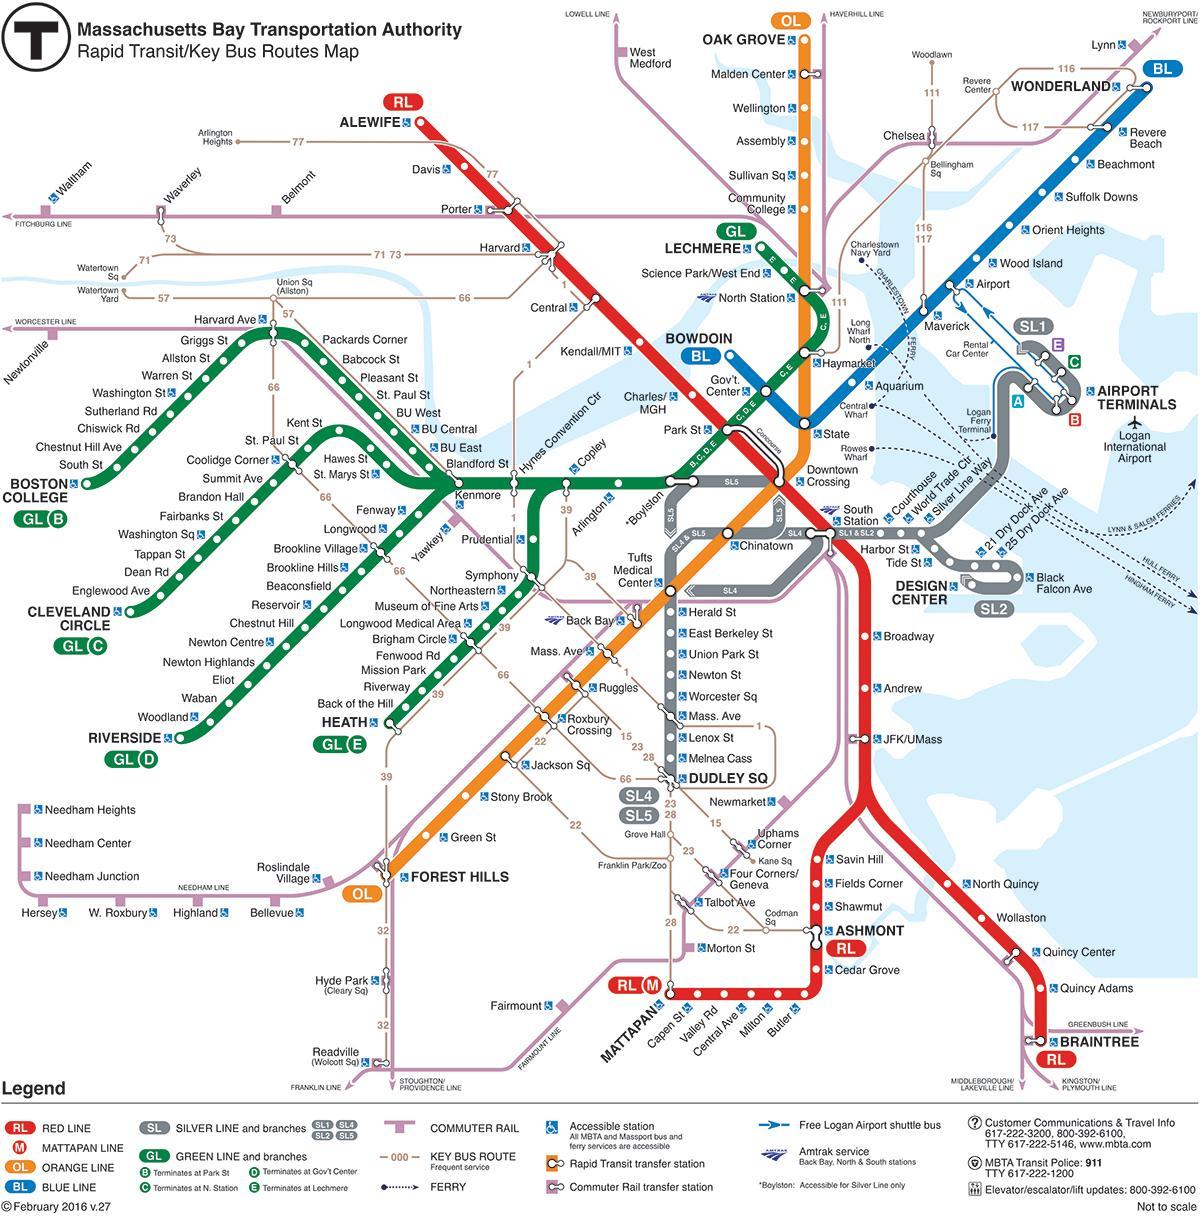 MBTA mapa pulang linya